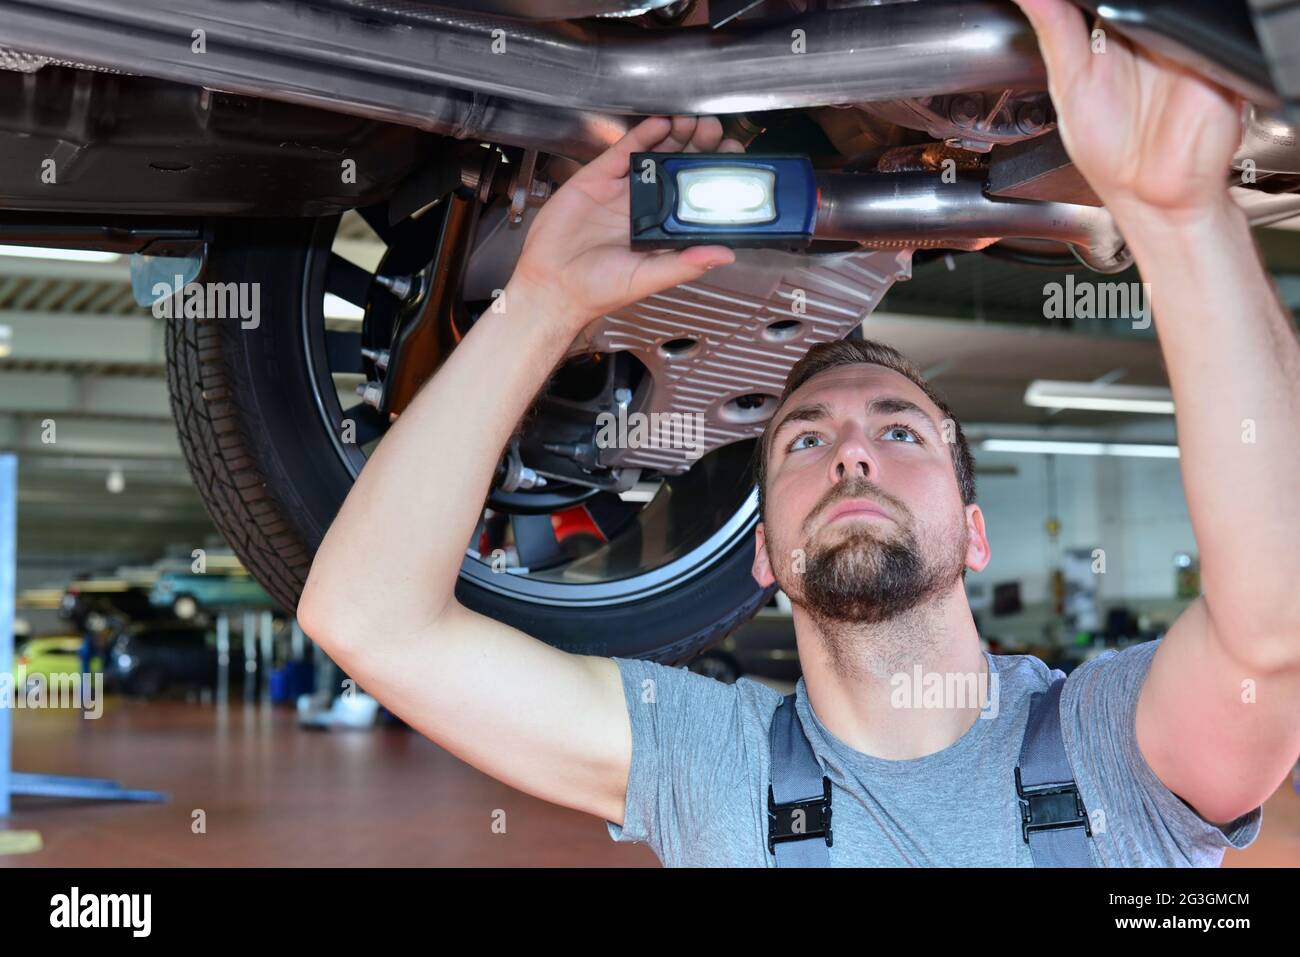 Automechaniker repariert Fahrzeug in einer Werkstatt - Bremsen auf Sicherheit prüfen Stockfoto